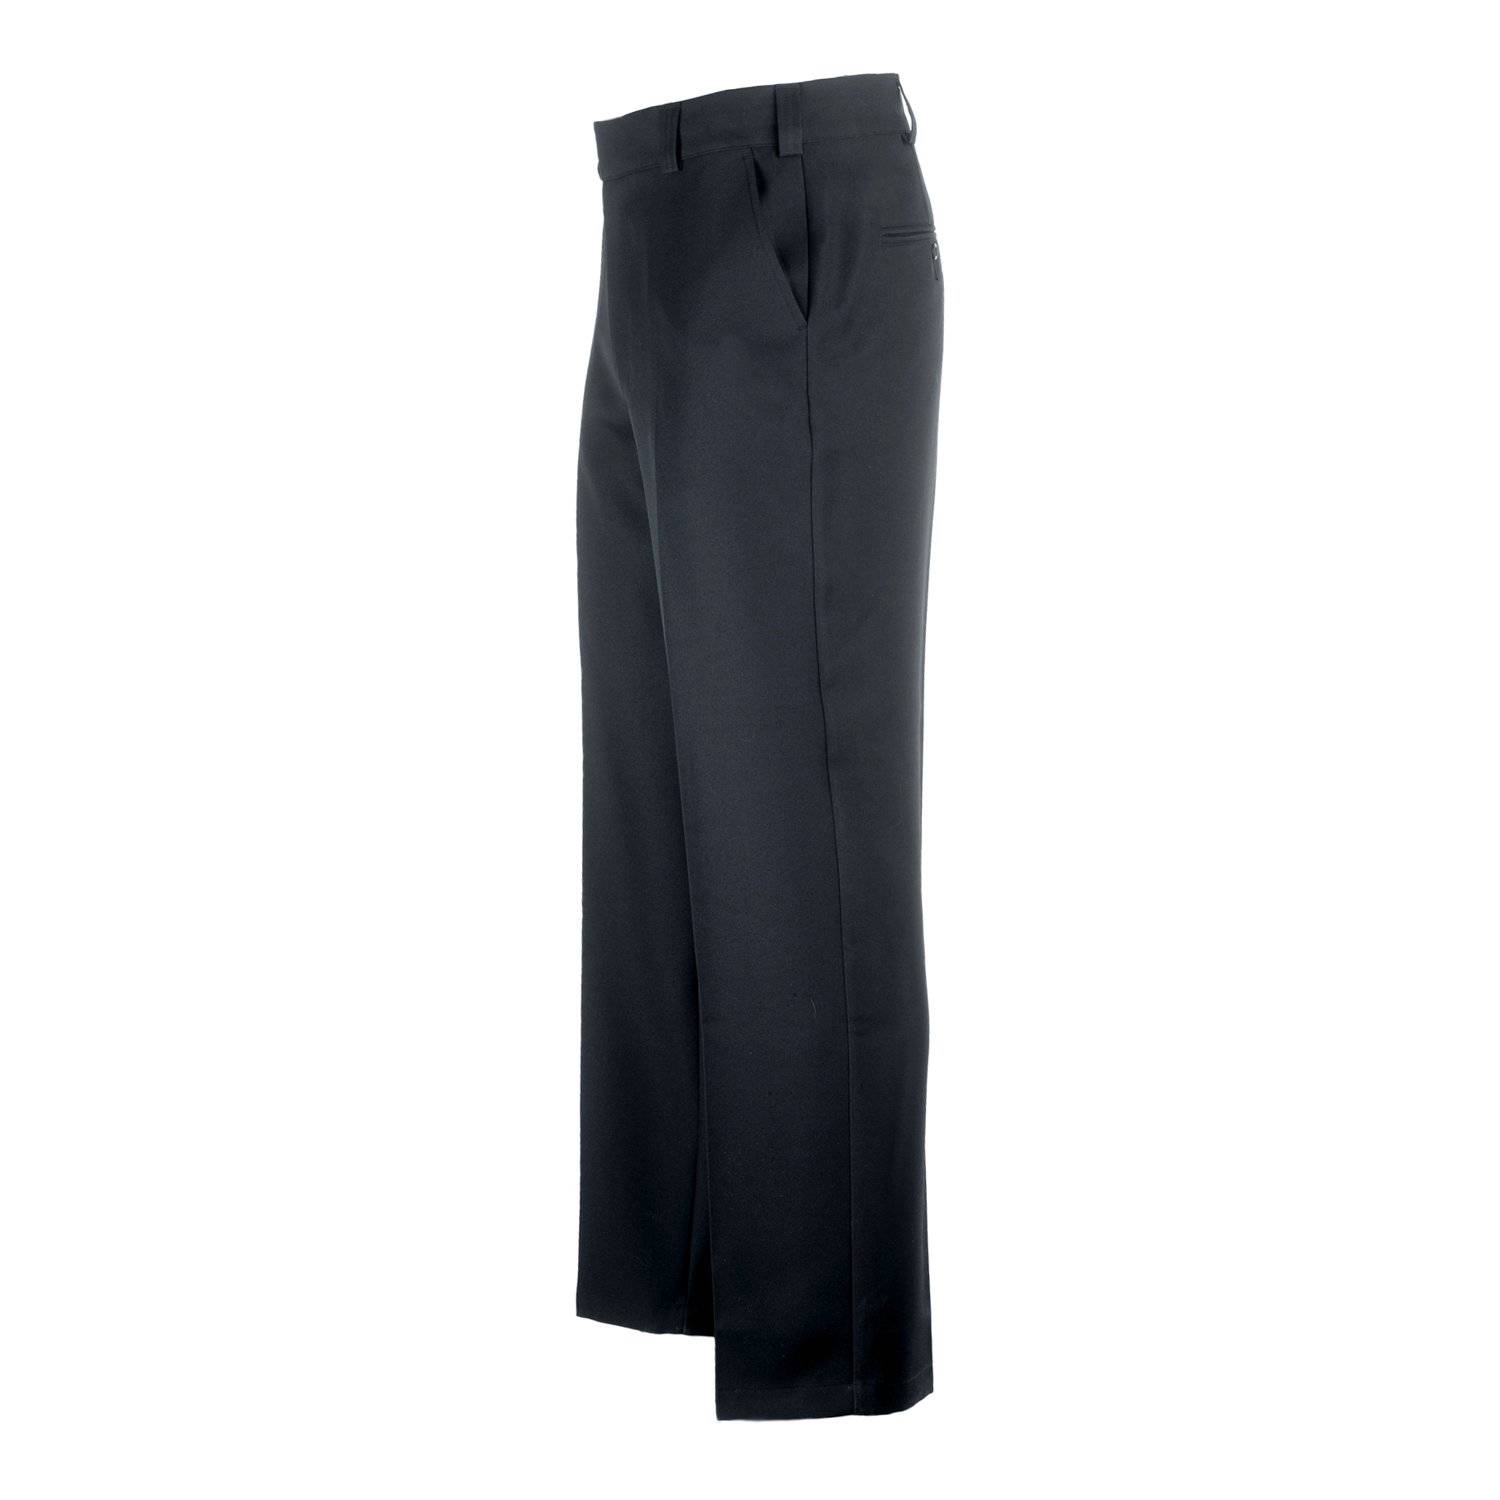 LawPro+ Men’s 100% Polyester Trousers | Uniform Pants